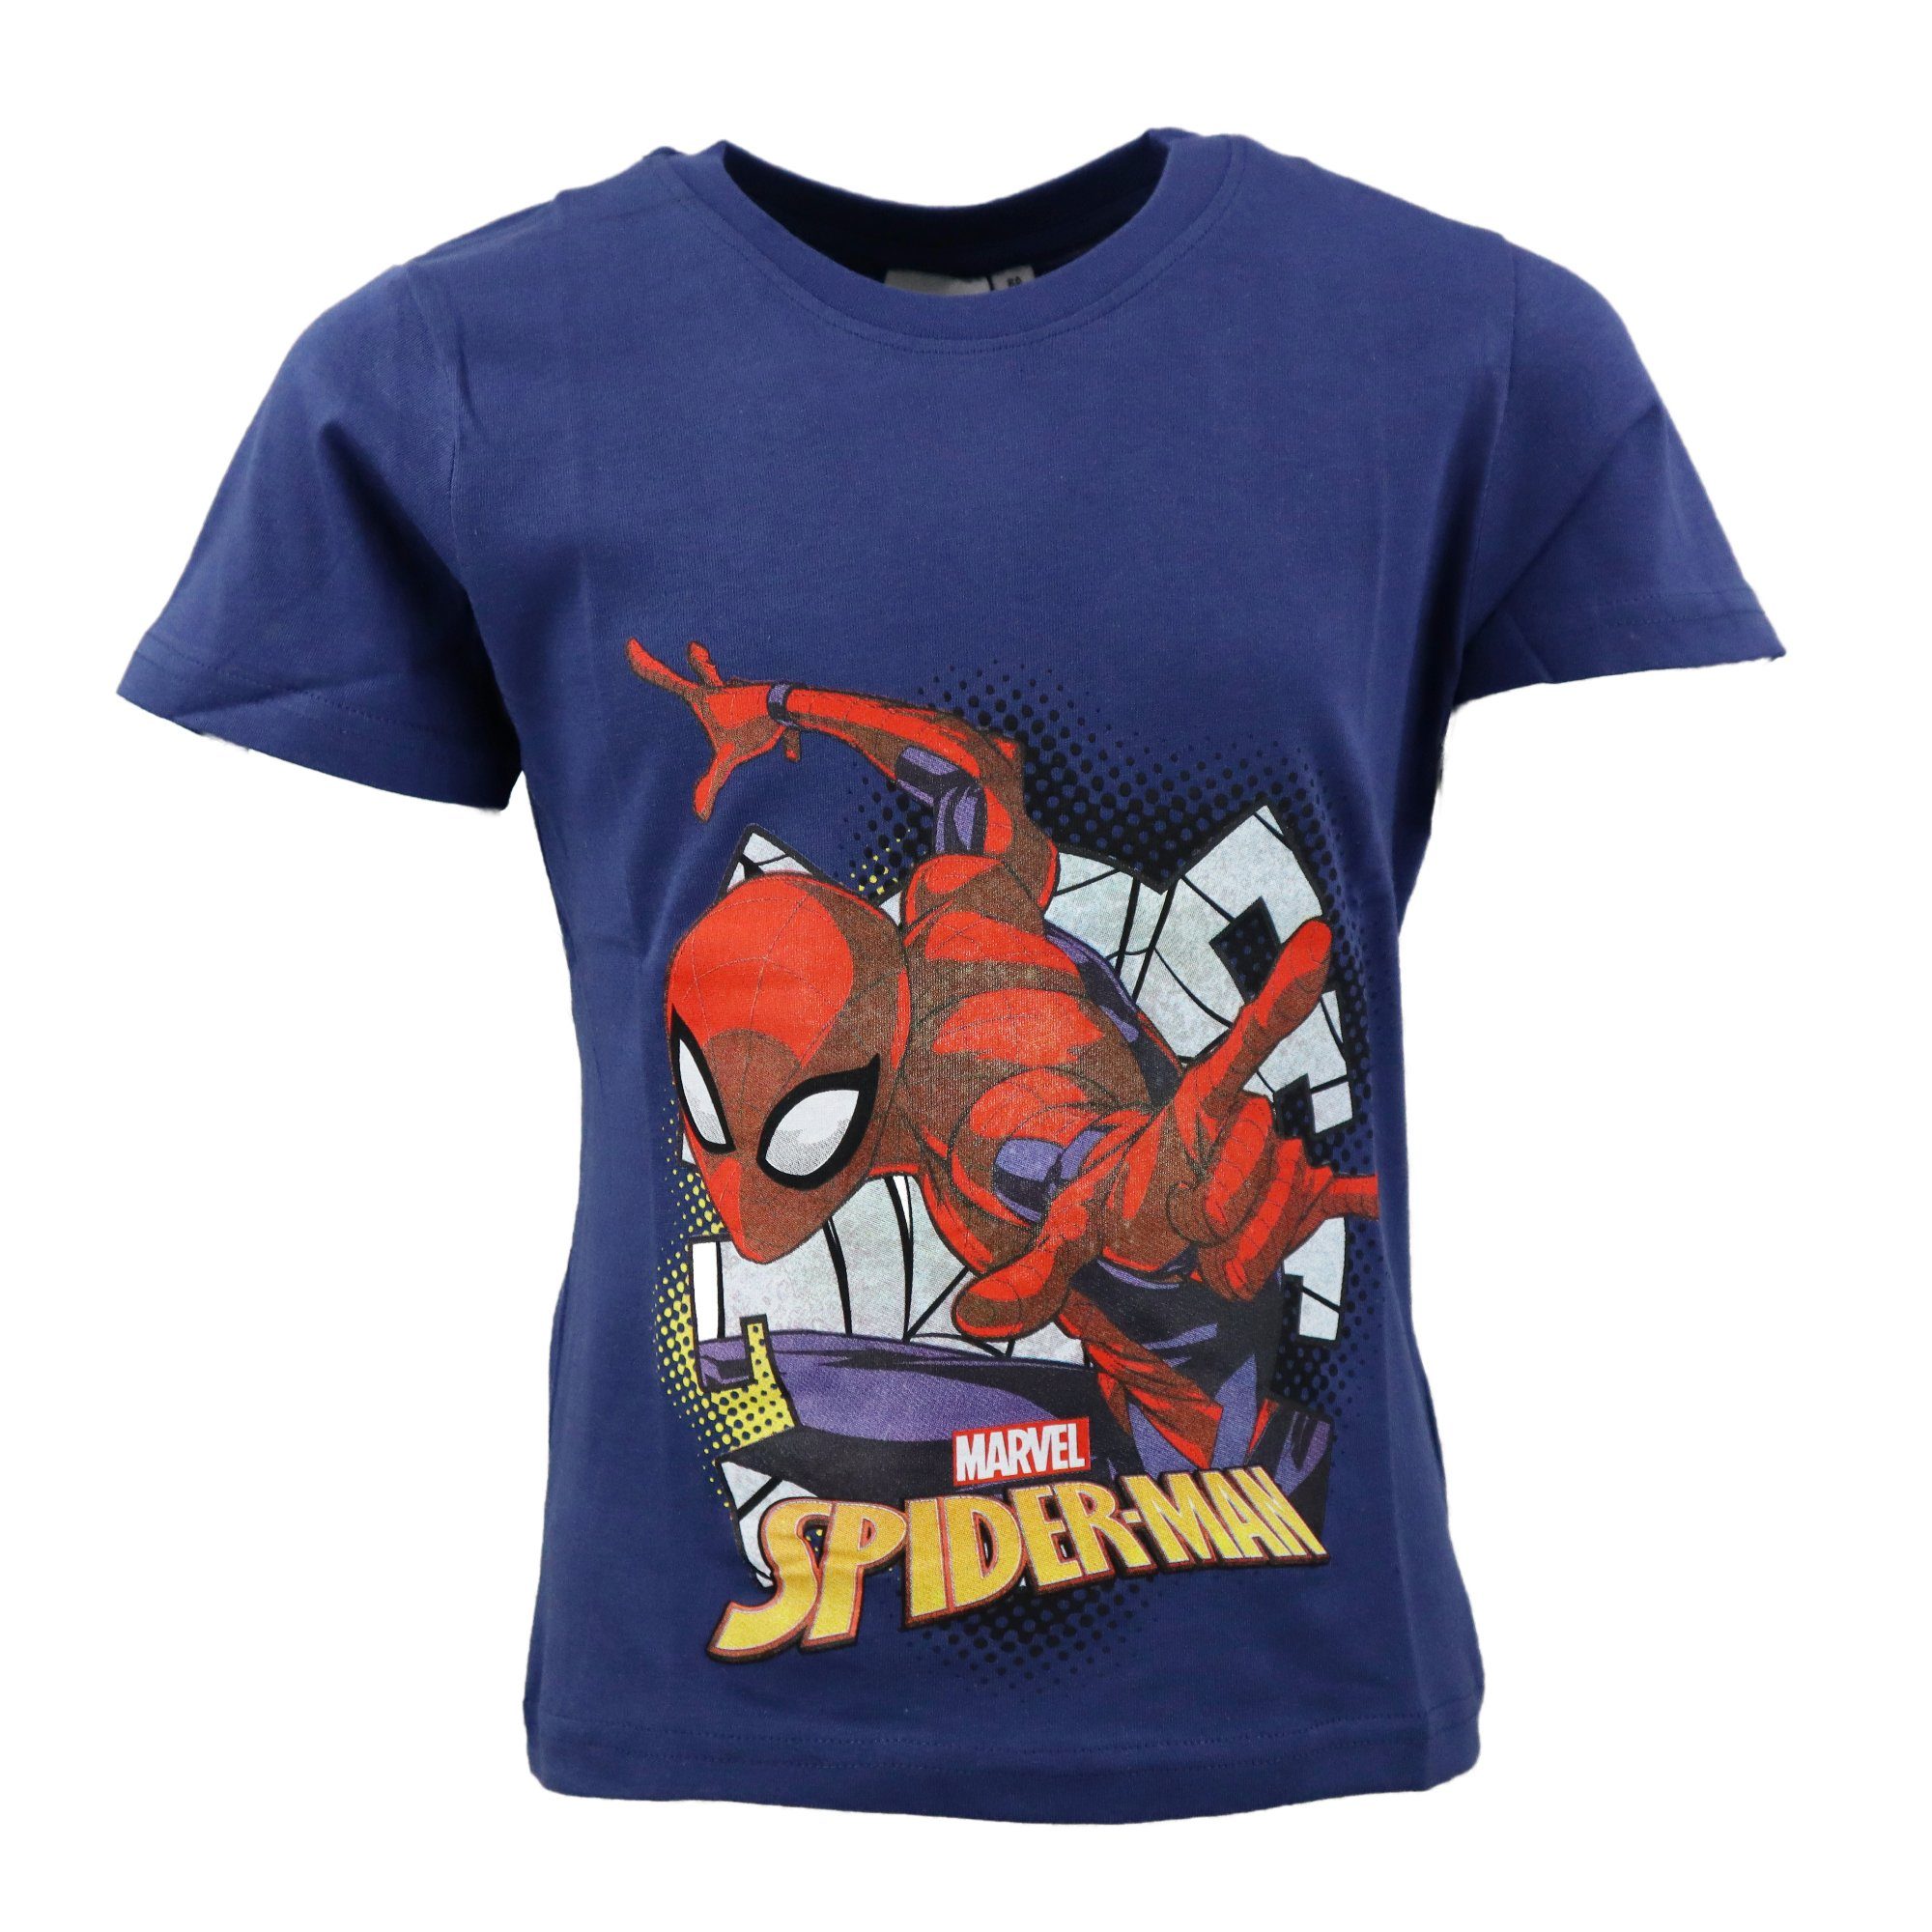 Gr. Print-Shirt bis Baumwolle MARVEL Spiderman 100% 128, Kinder T-Shirt 98 Jungen kurzarm Shirt